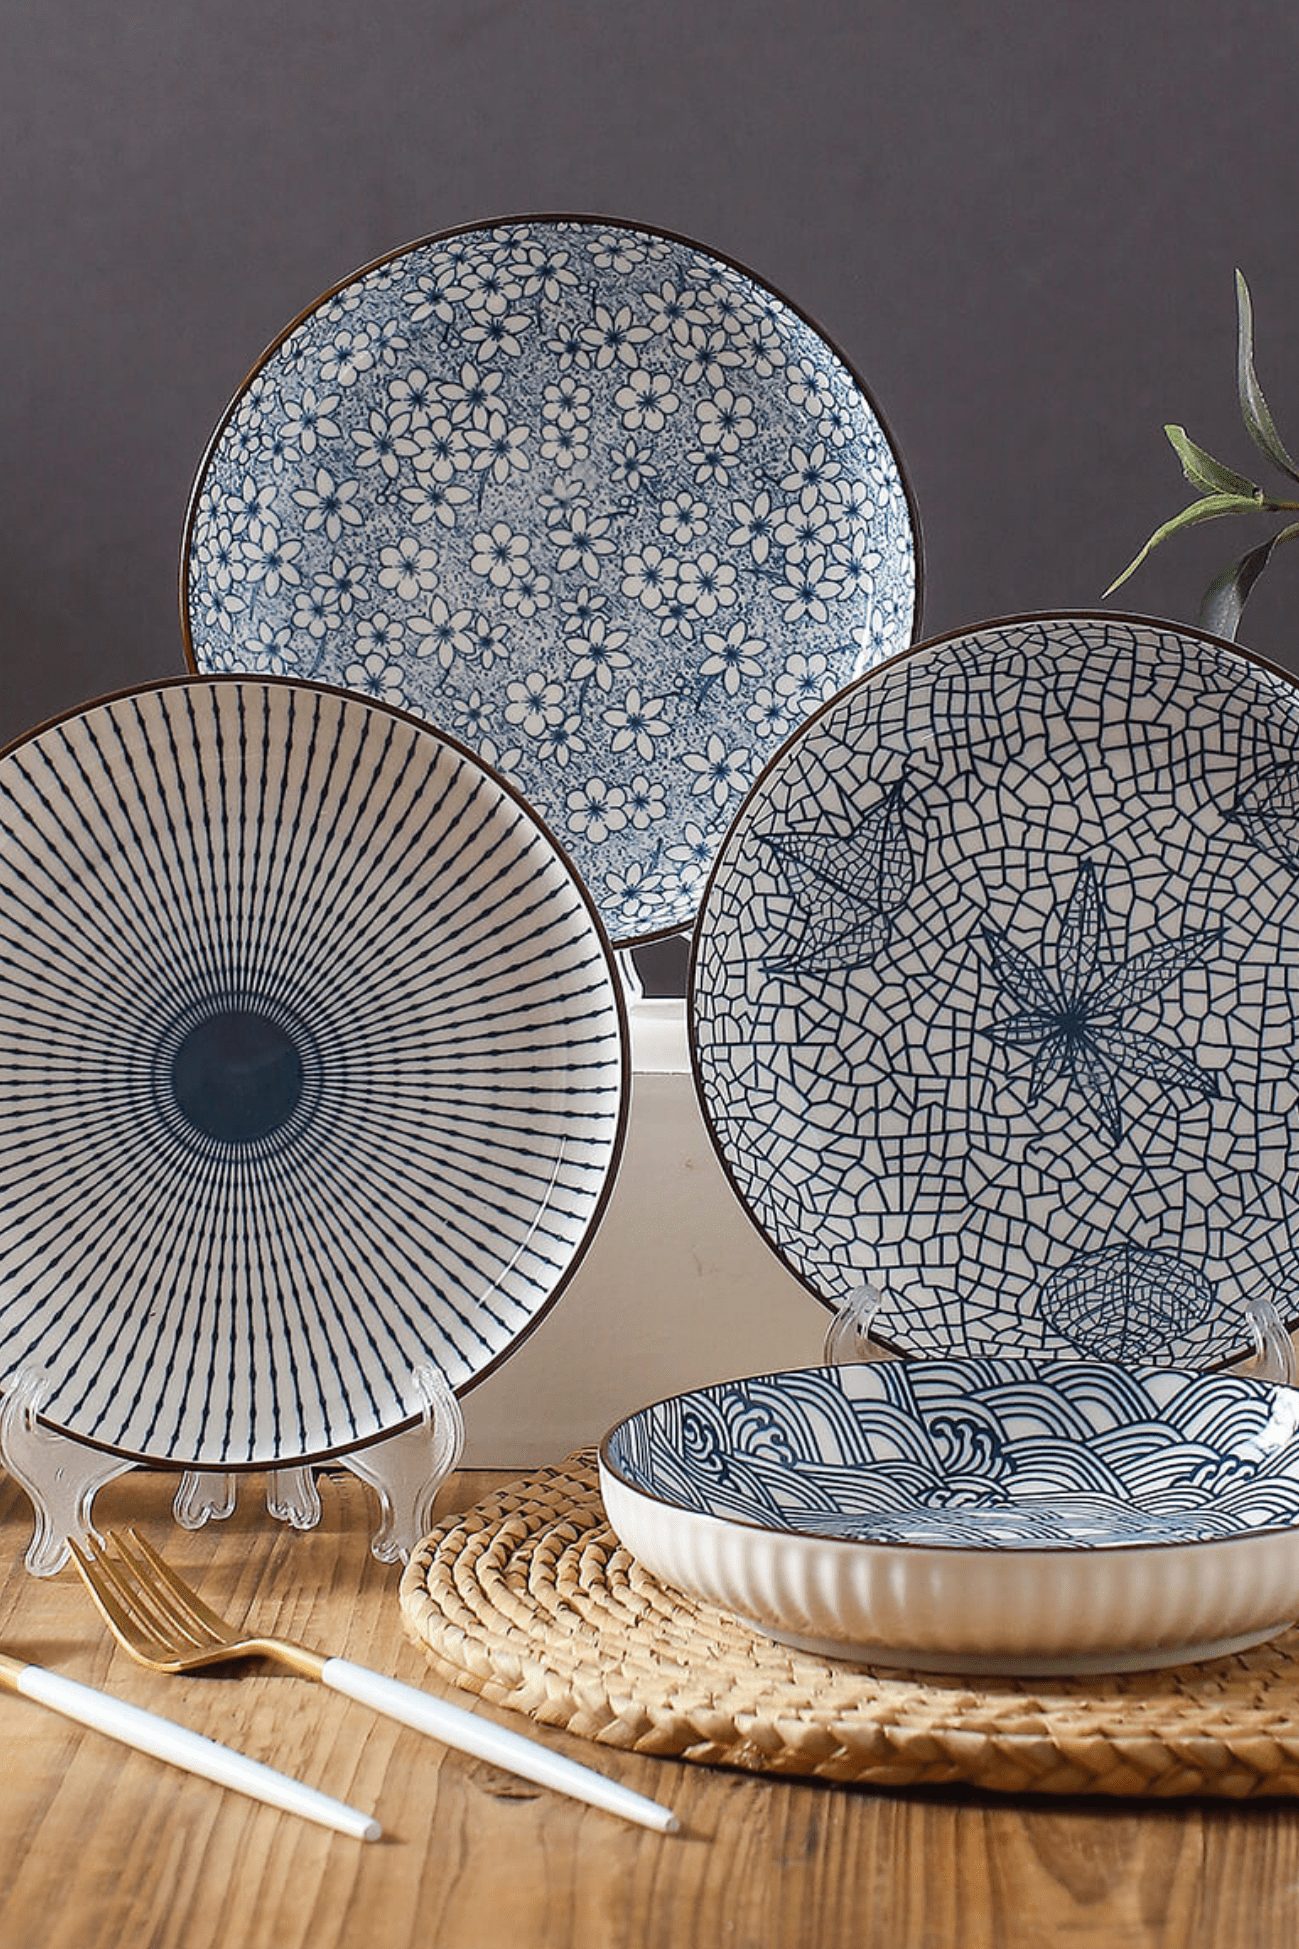 Antiope Design Kishi Sun - Piatto fondo in porcellana in stile orientale